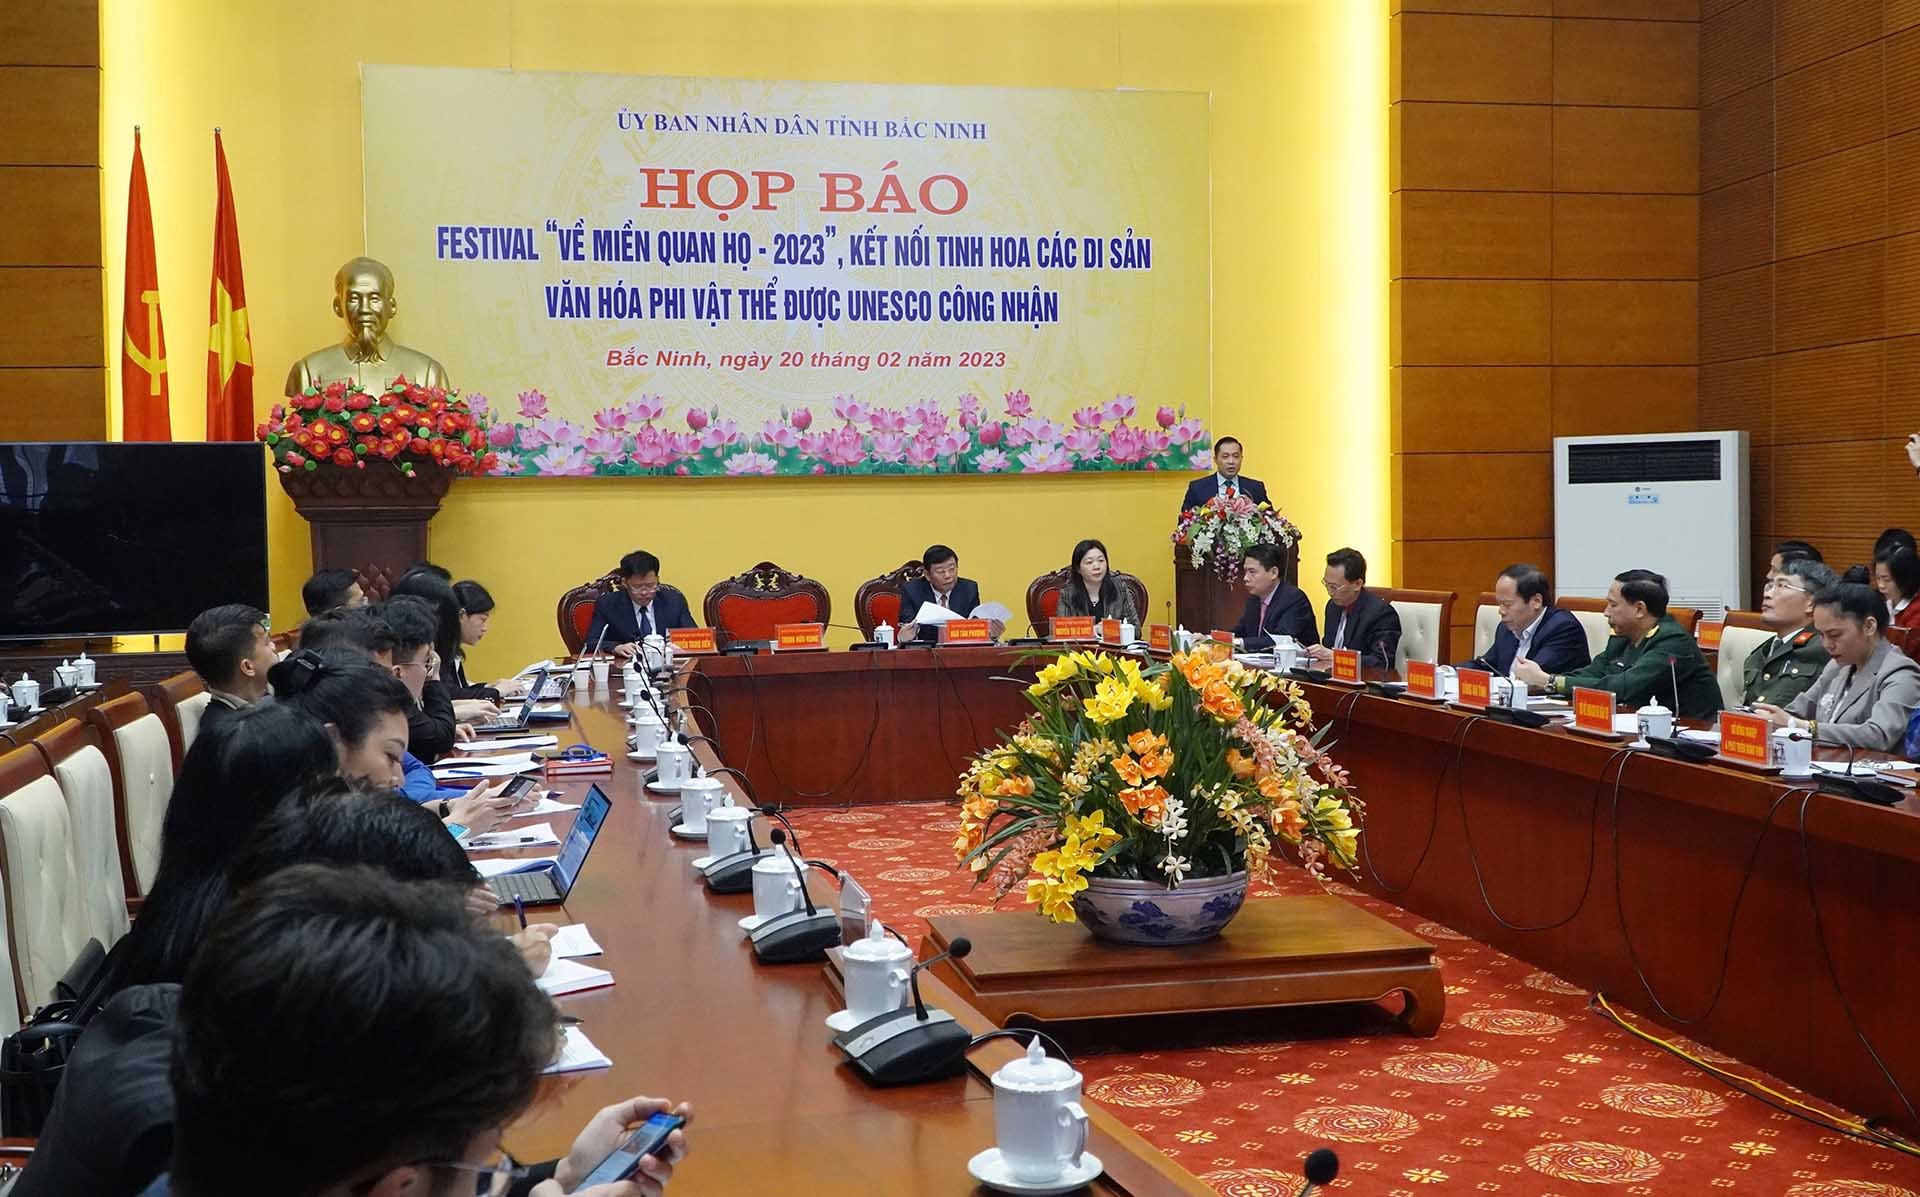 Đồng chí Trịnh Hữu Hùng-Giám đốc sở Văn hoá, Thể thao và Du lịch tỉnh Bắc Ninh phát biểu tại họp báo.